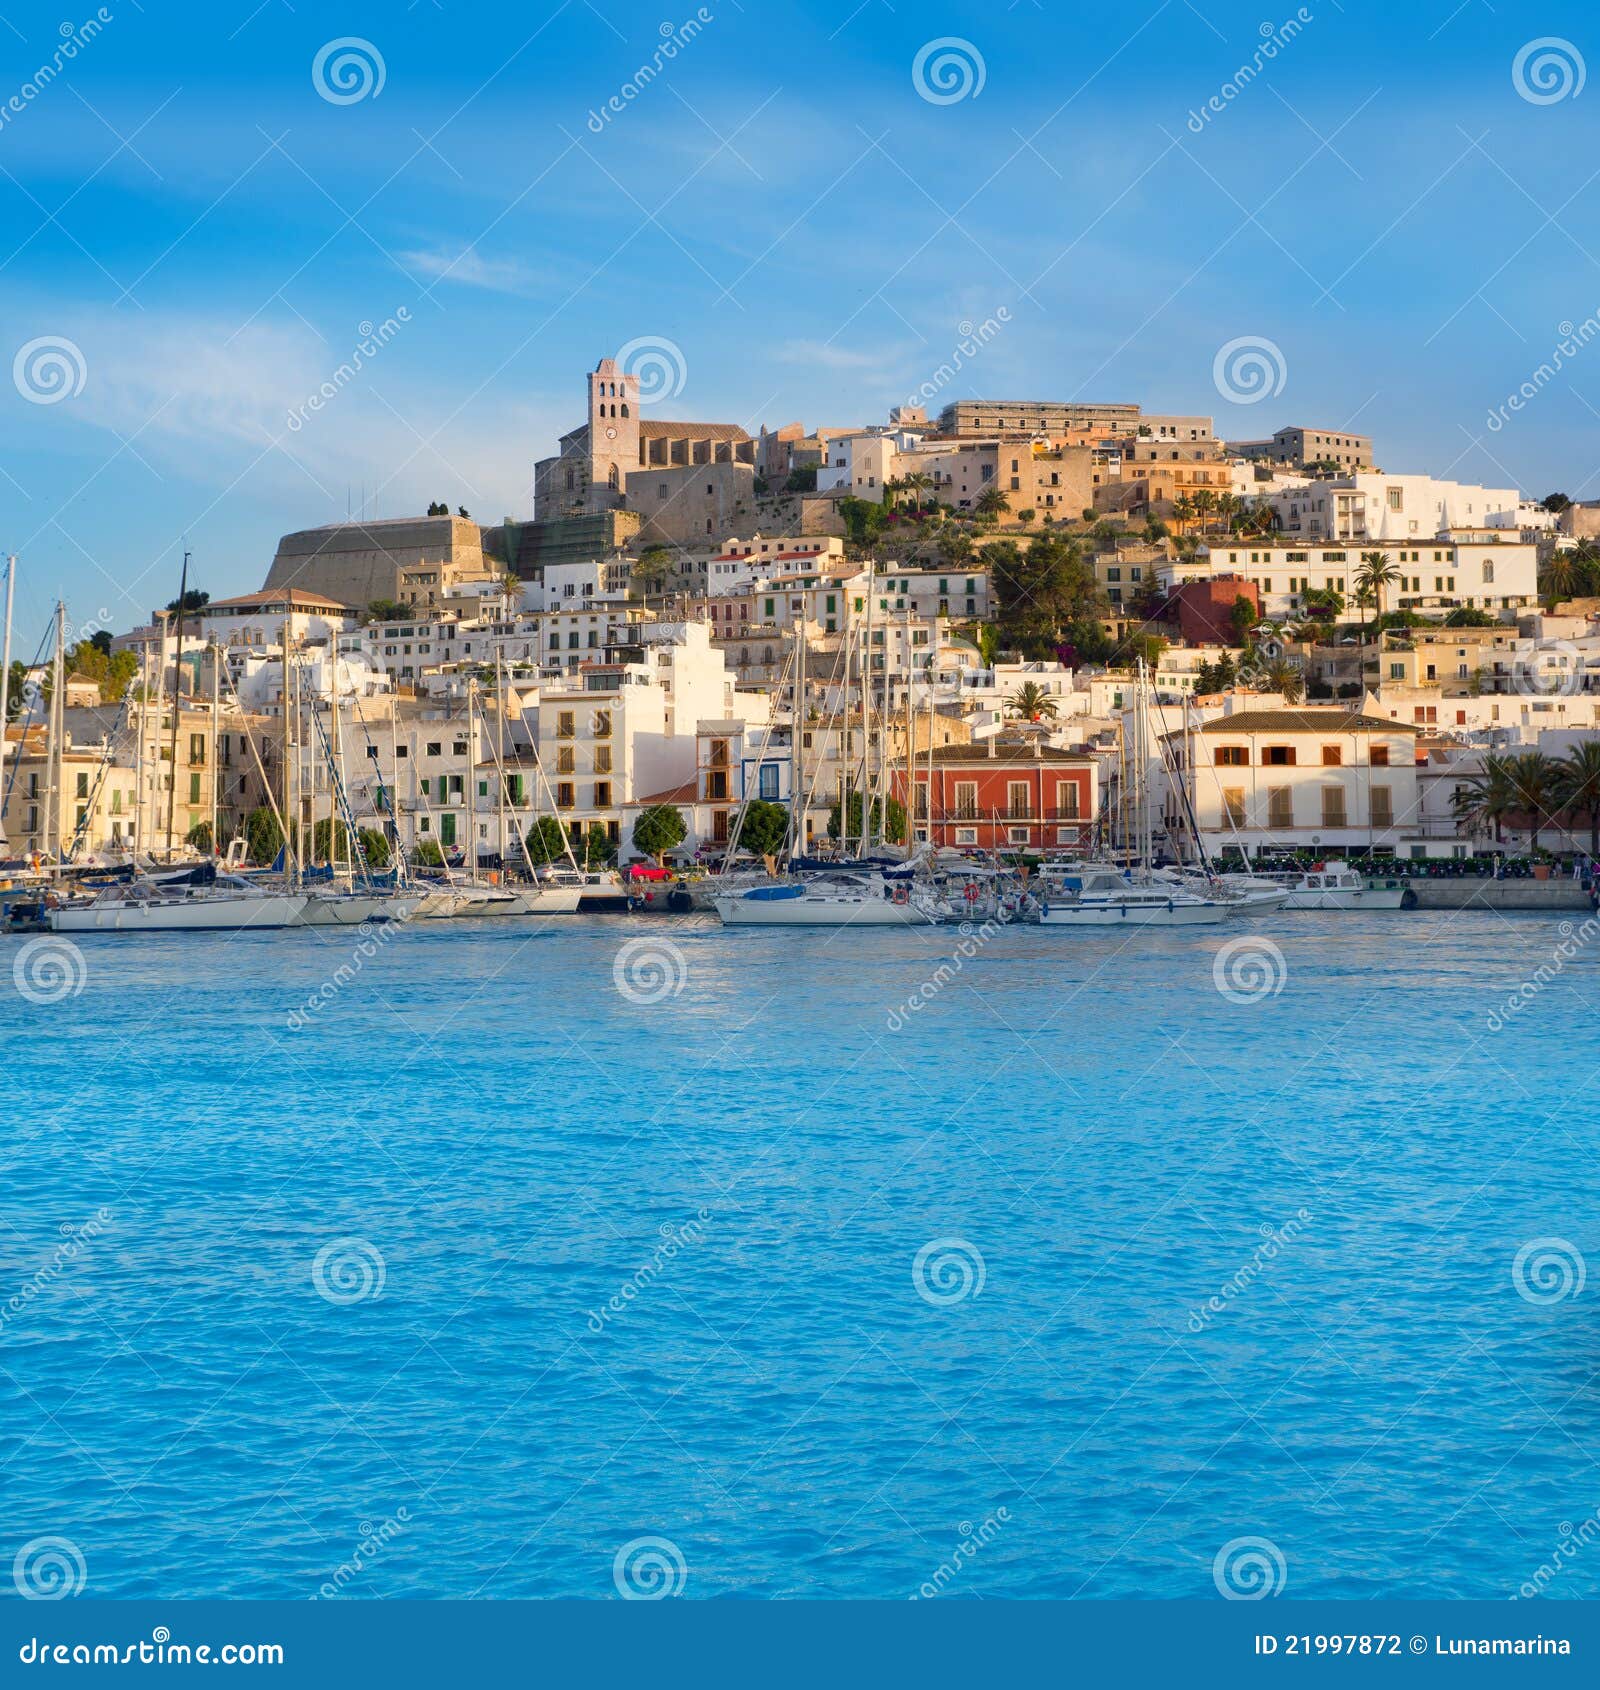 ibiza eivissa town with blue mediterranean